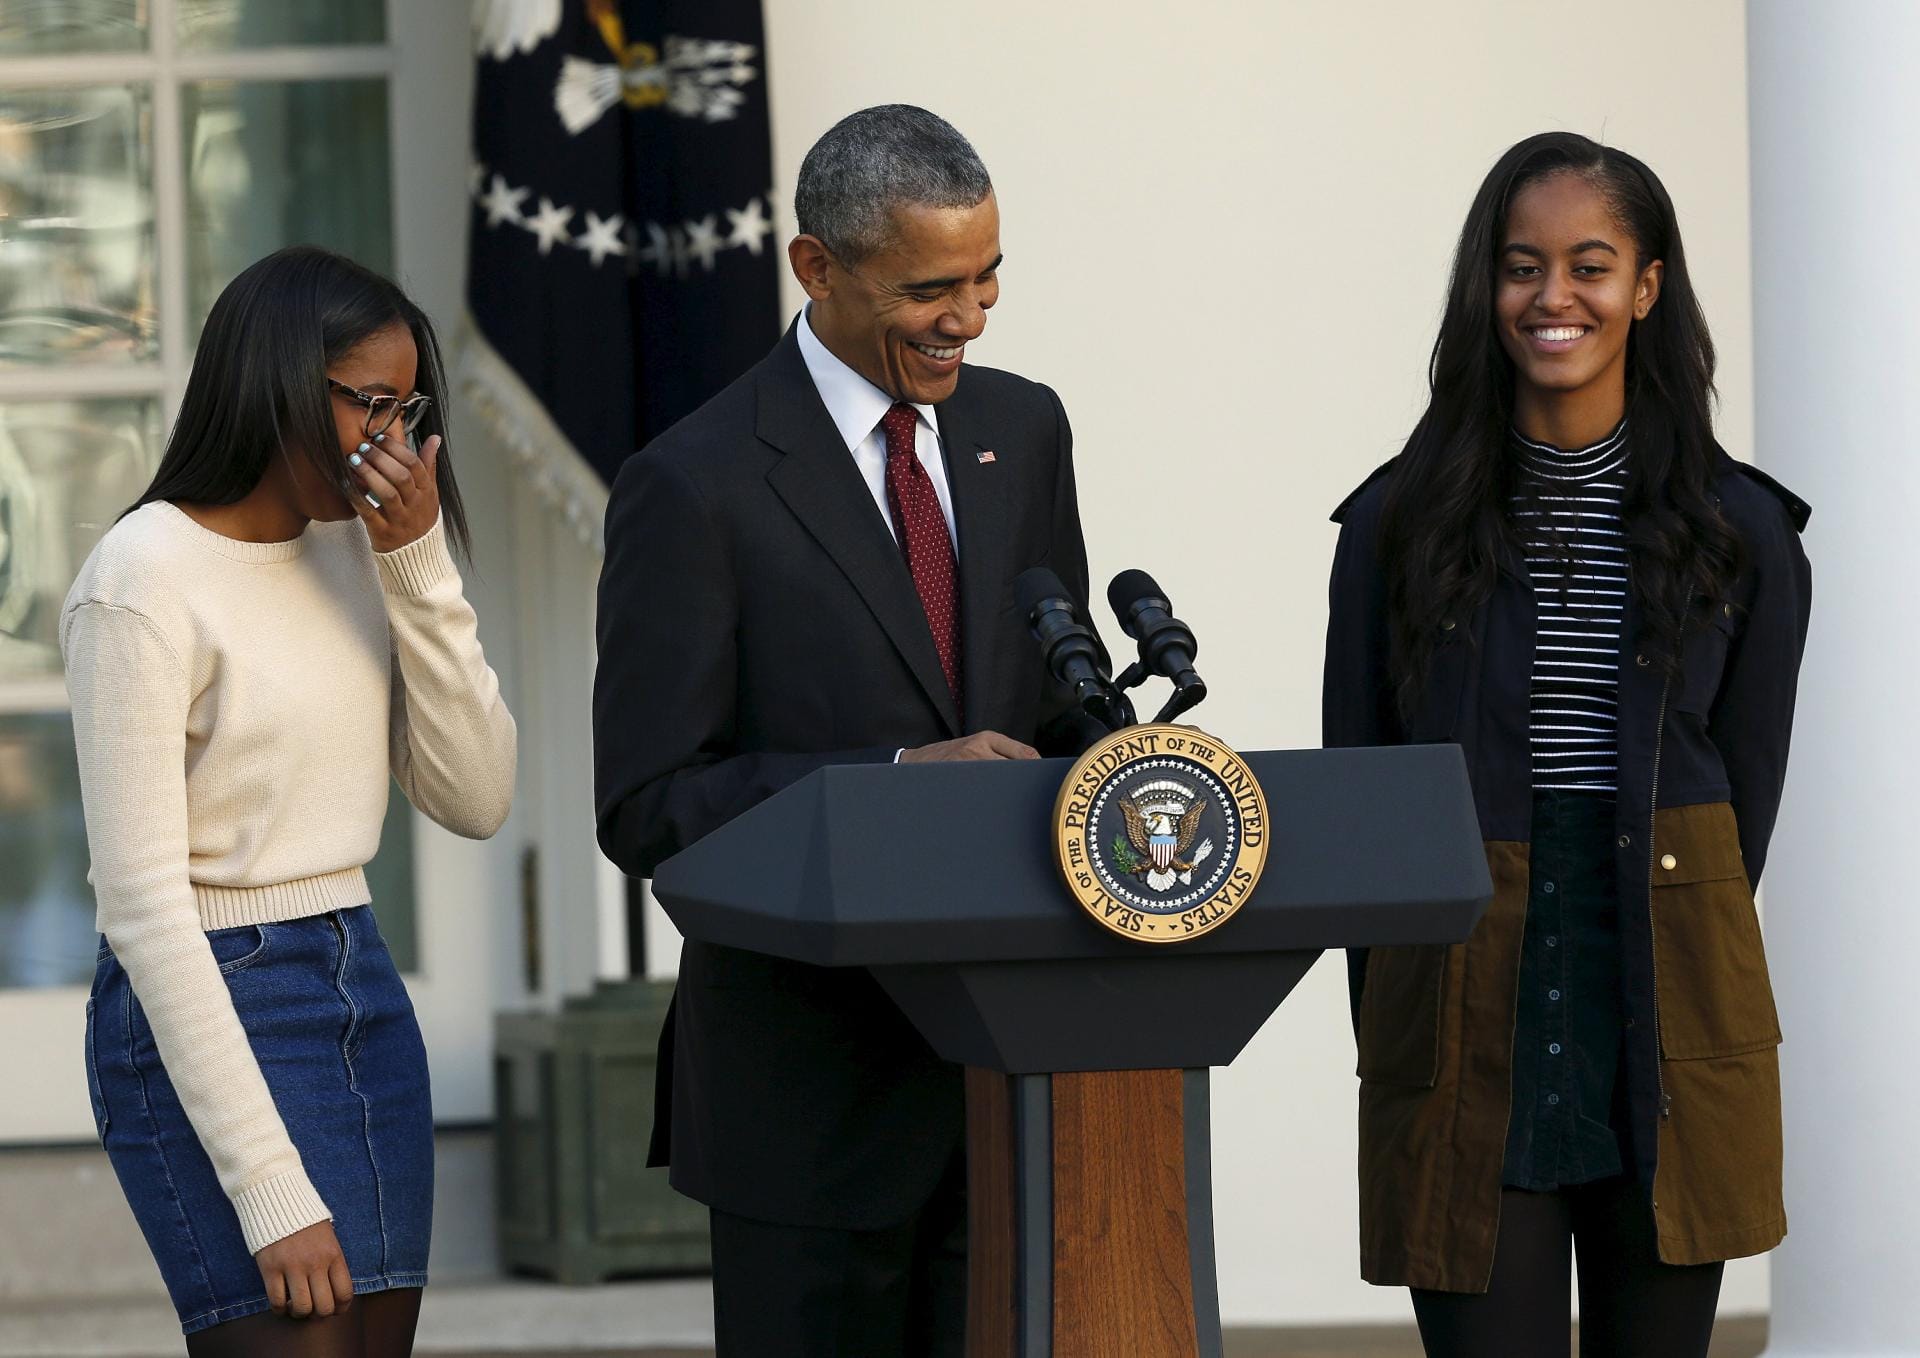 "Die Zeit verfliegt, auch wenn Truthähne nicht fliegen können", kalauerte der Präsident über das flugunfähige Federvieh. Das brachte auch seine beiden 14 und 17 Jahre alten Töchter Malia (li.) und Sasha (re.) zum Lachen.